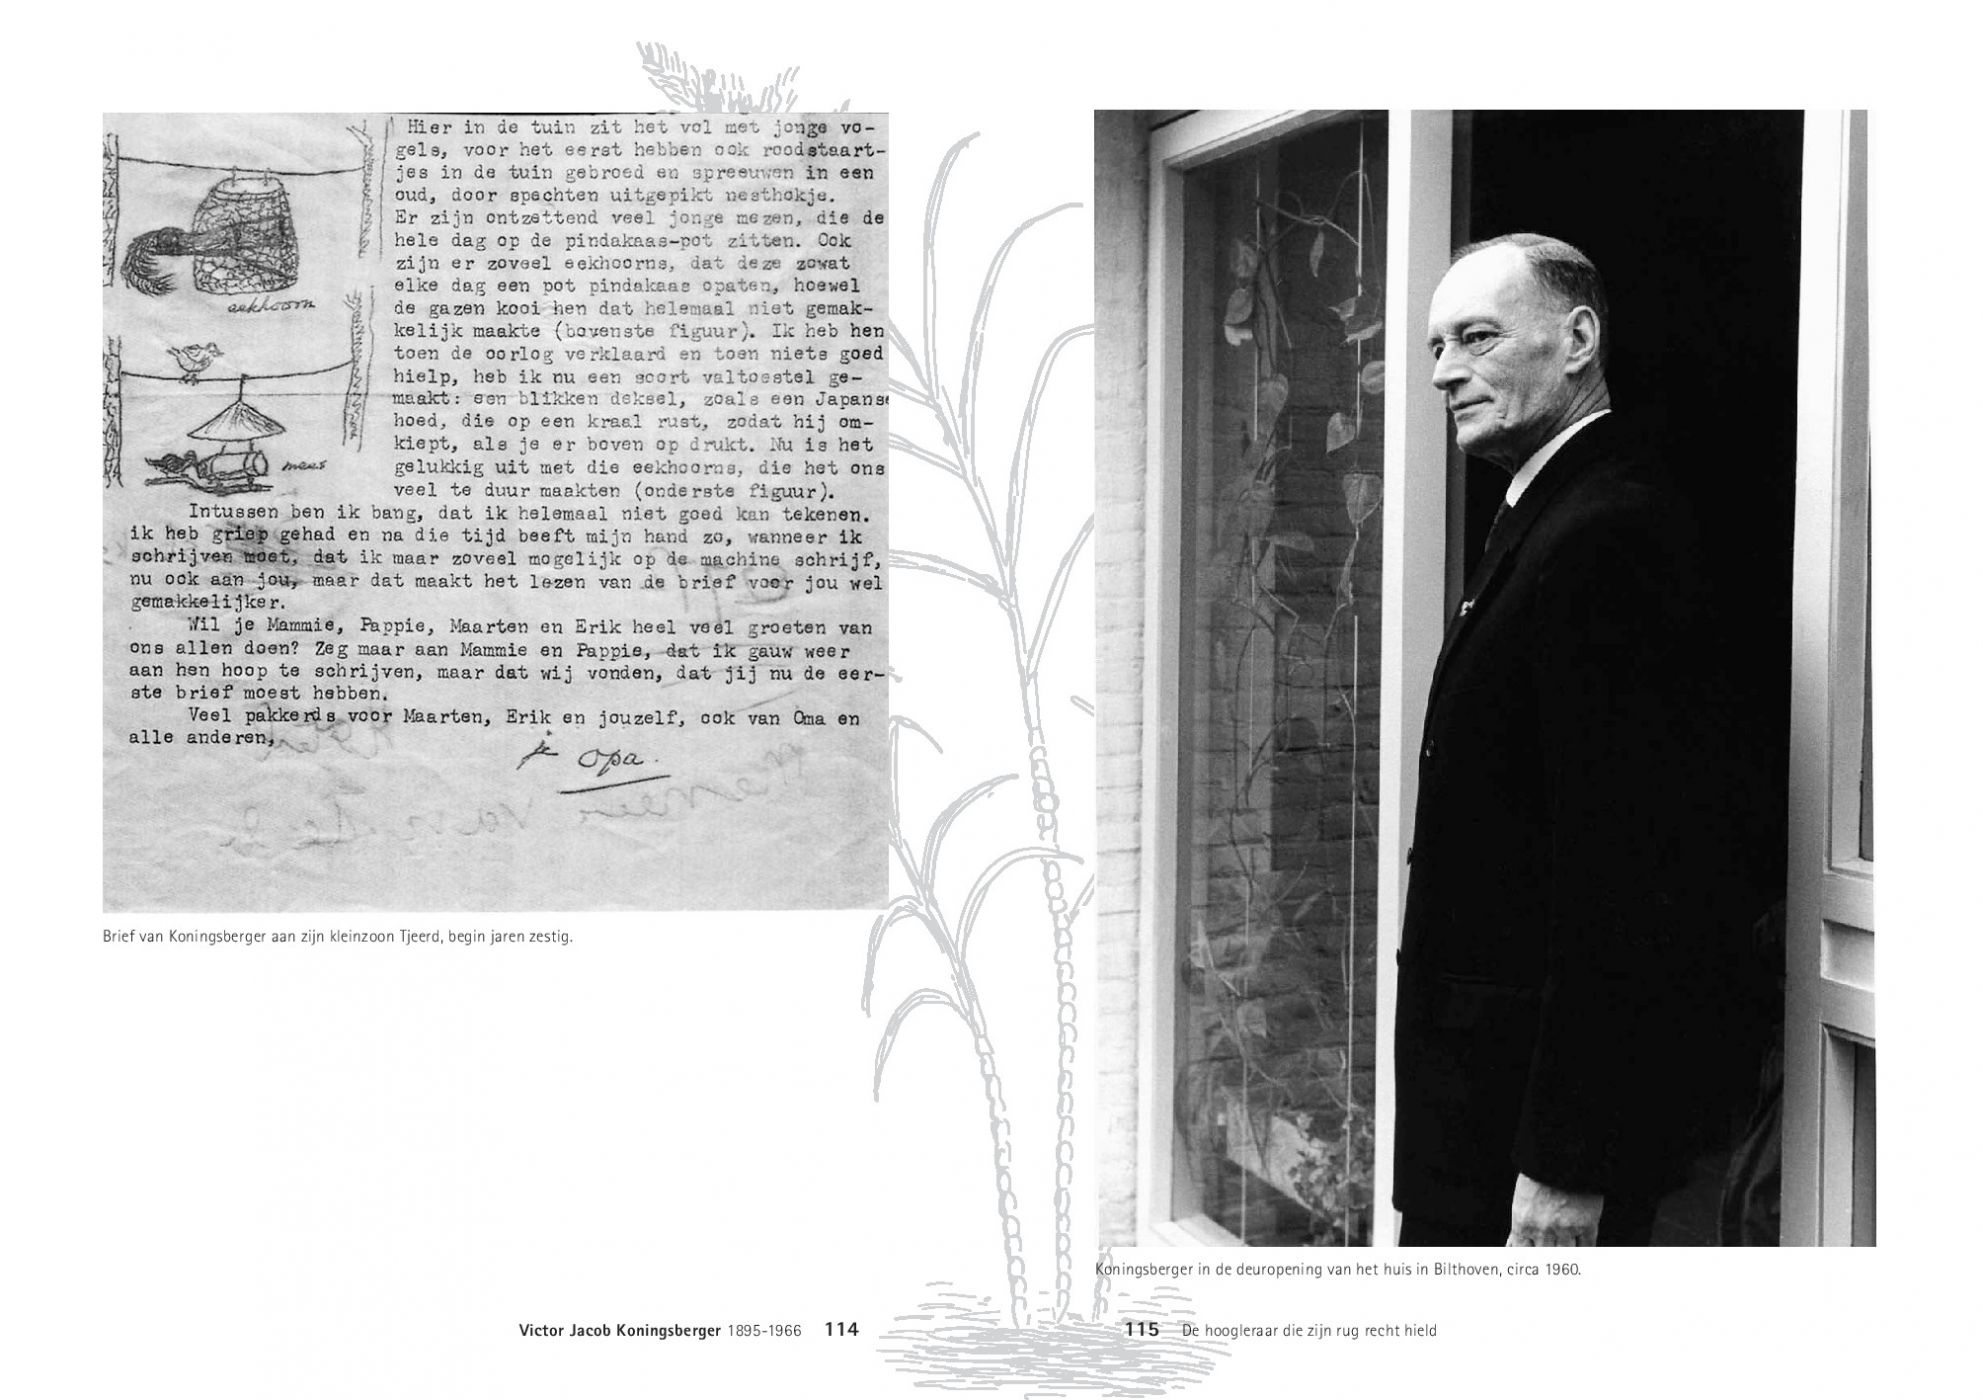 Inkijkexemplaar van het boek: <em>Victor Jacob Koningsberger, 1895-1966. De hoogleraar die zijn rug recht hield</em> - © Uitgeverij Matrijs